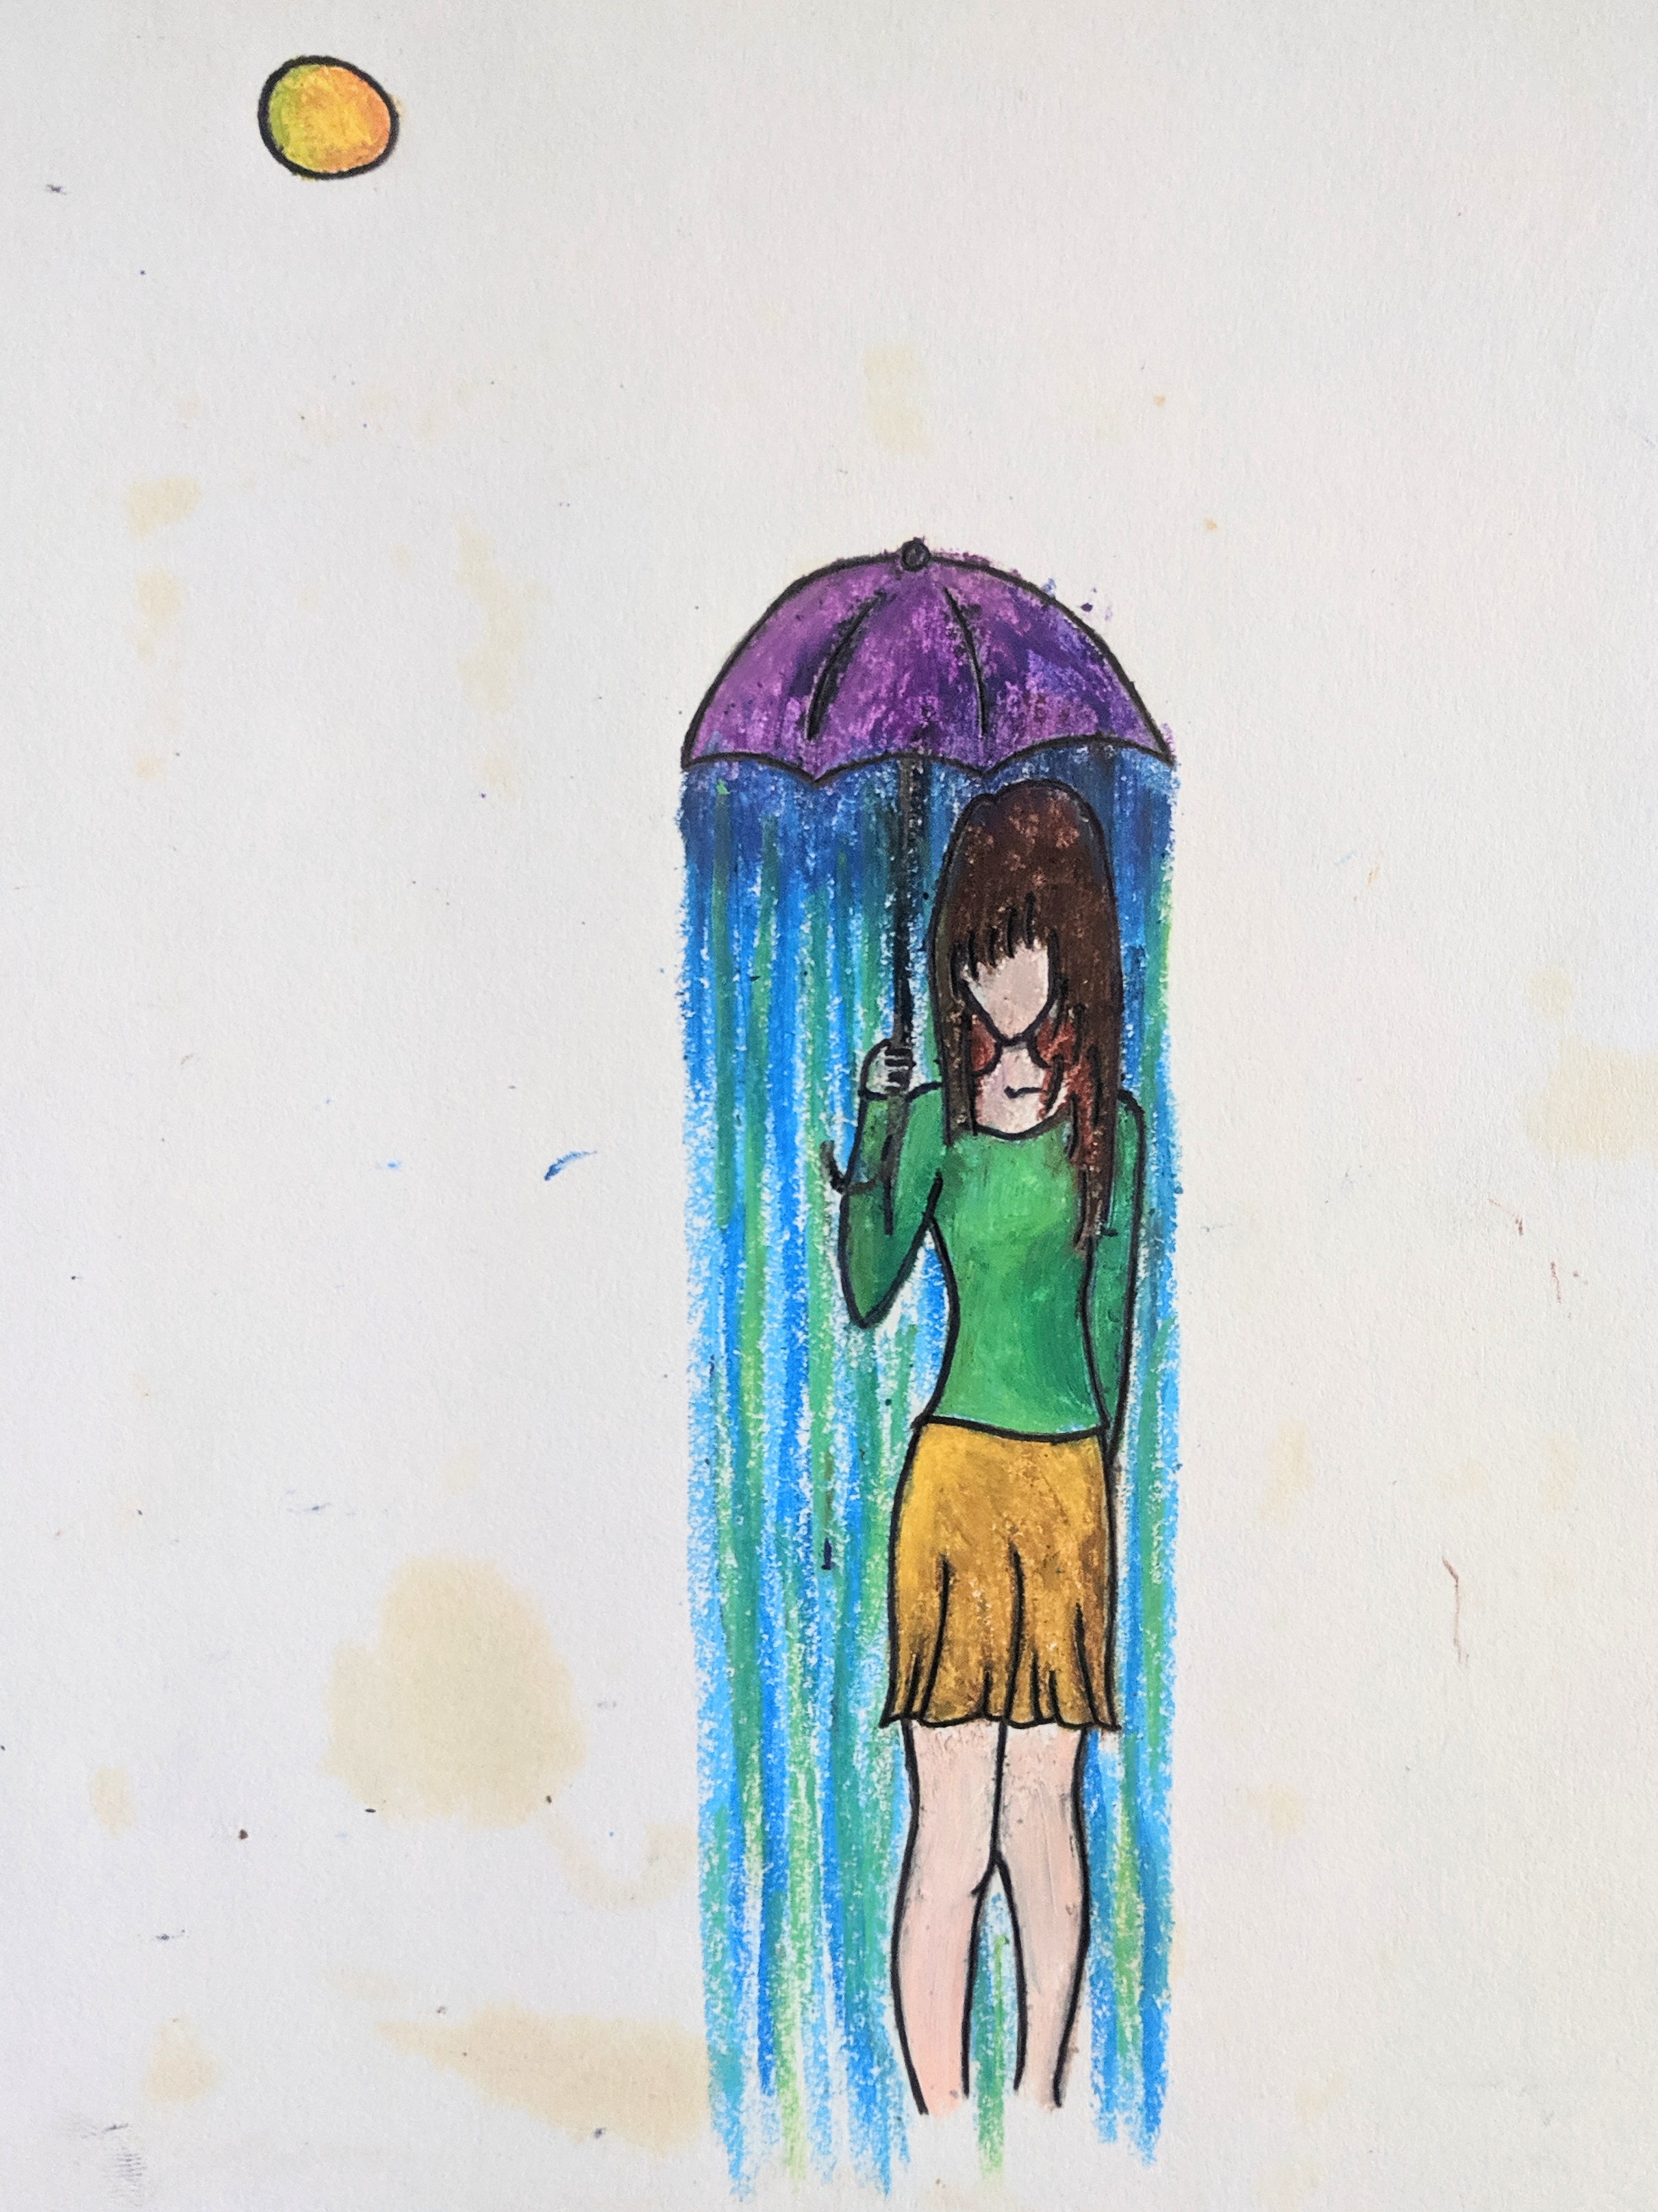 Umbrella raining on girl